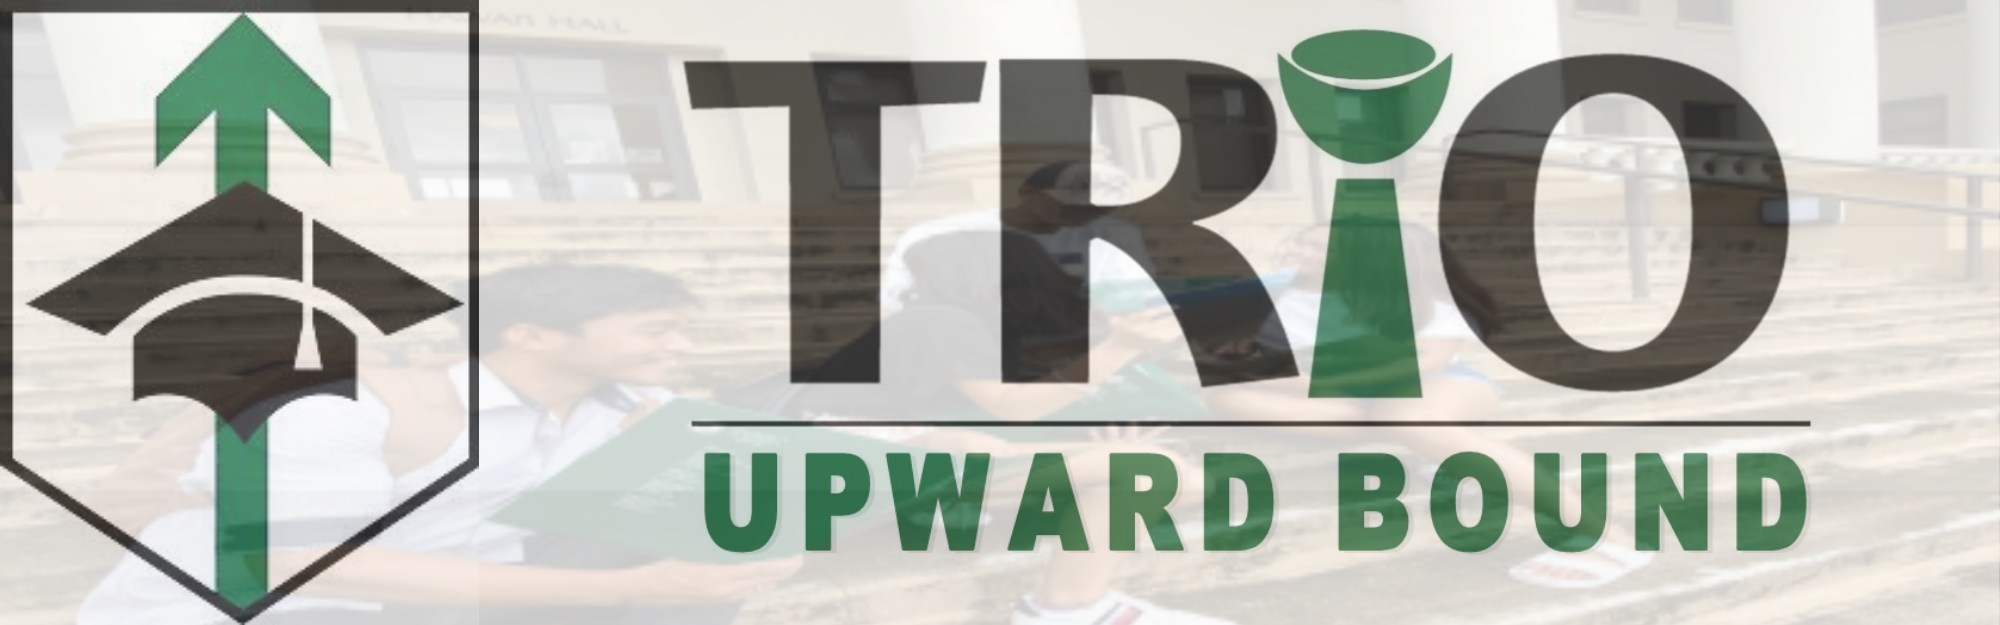 TRIO Upward Bound banner